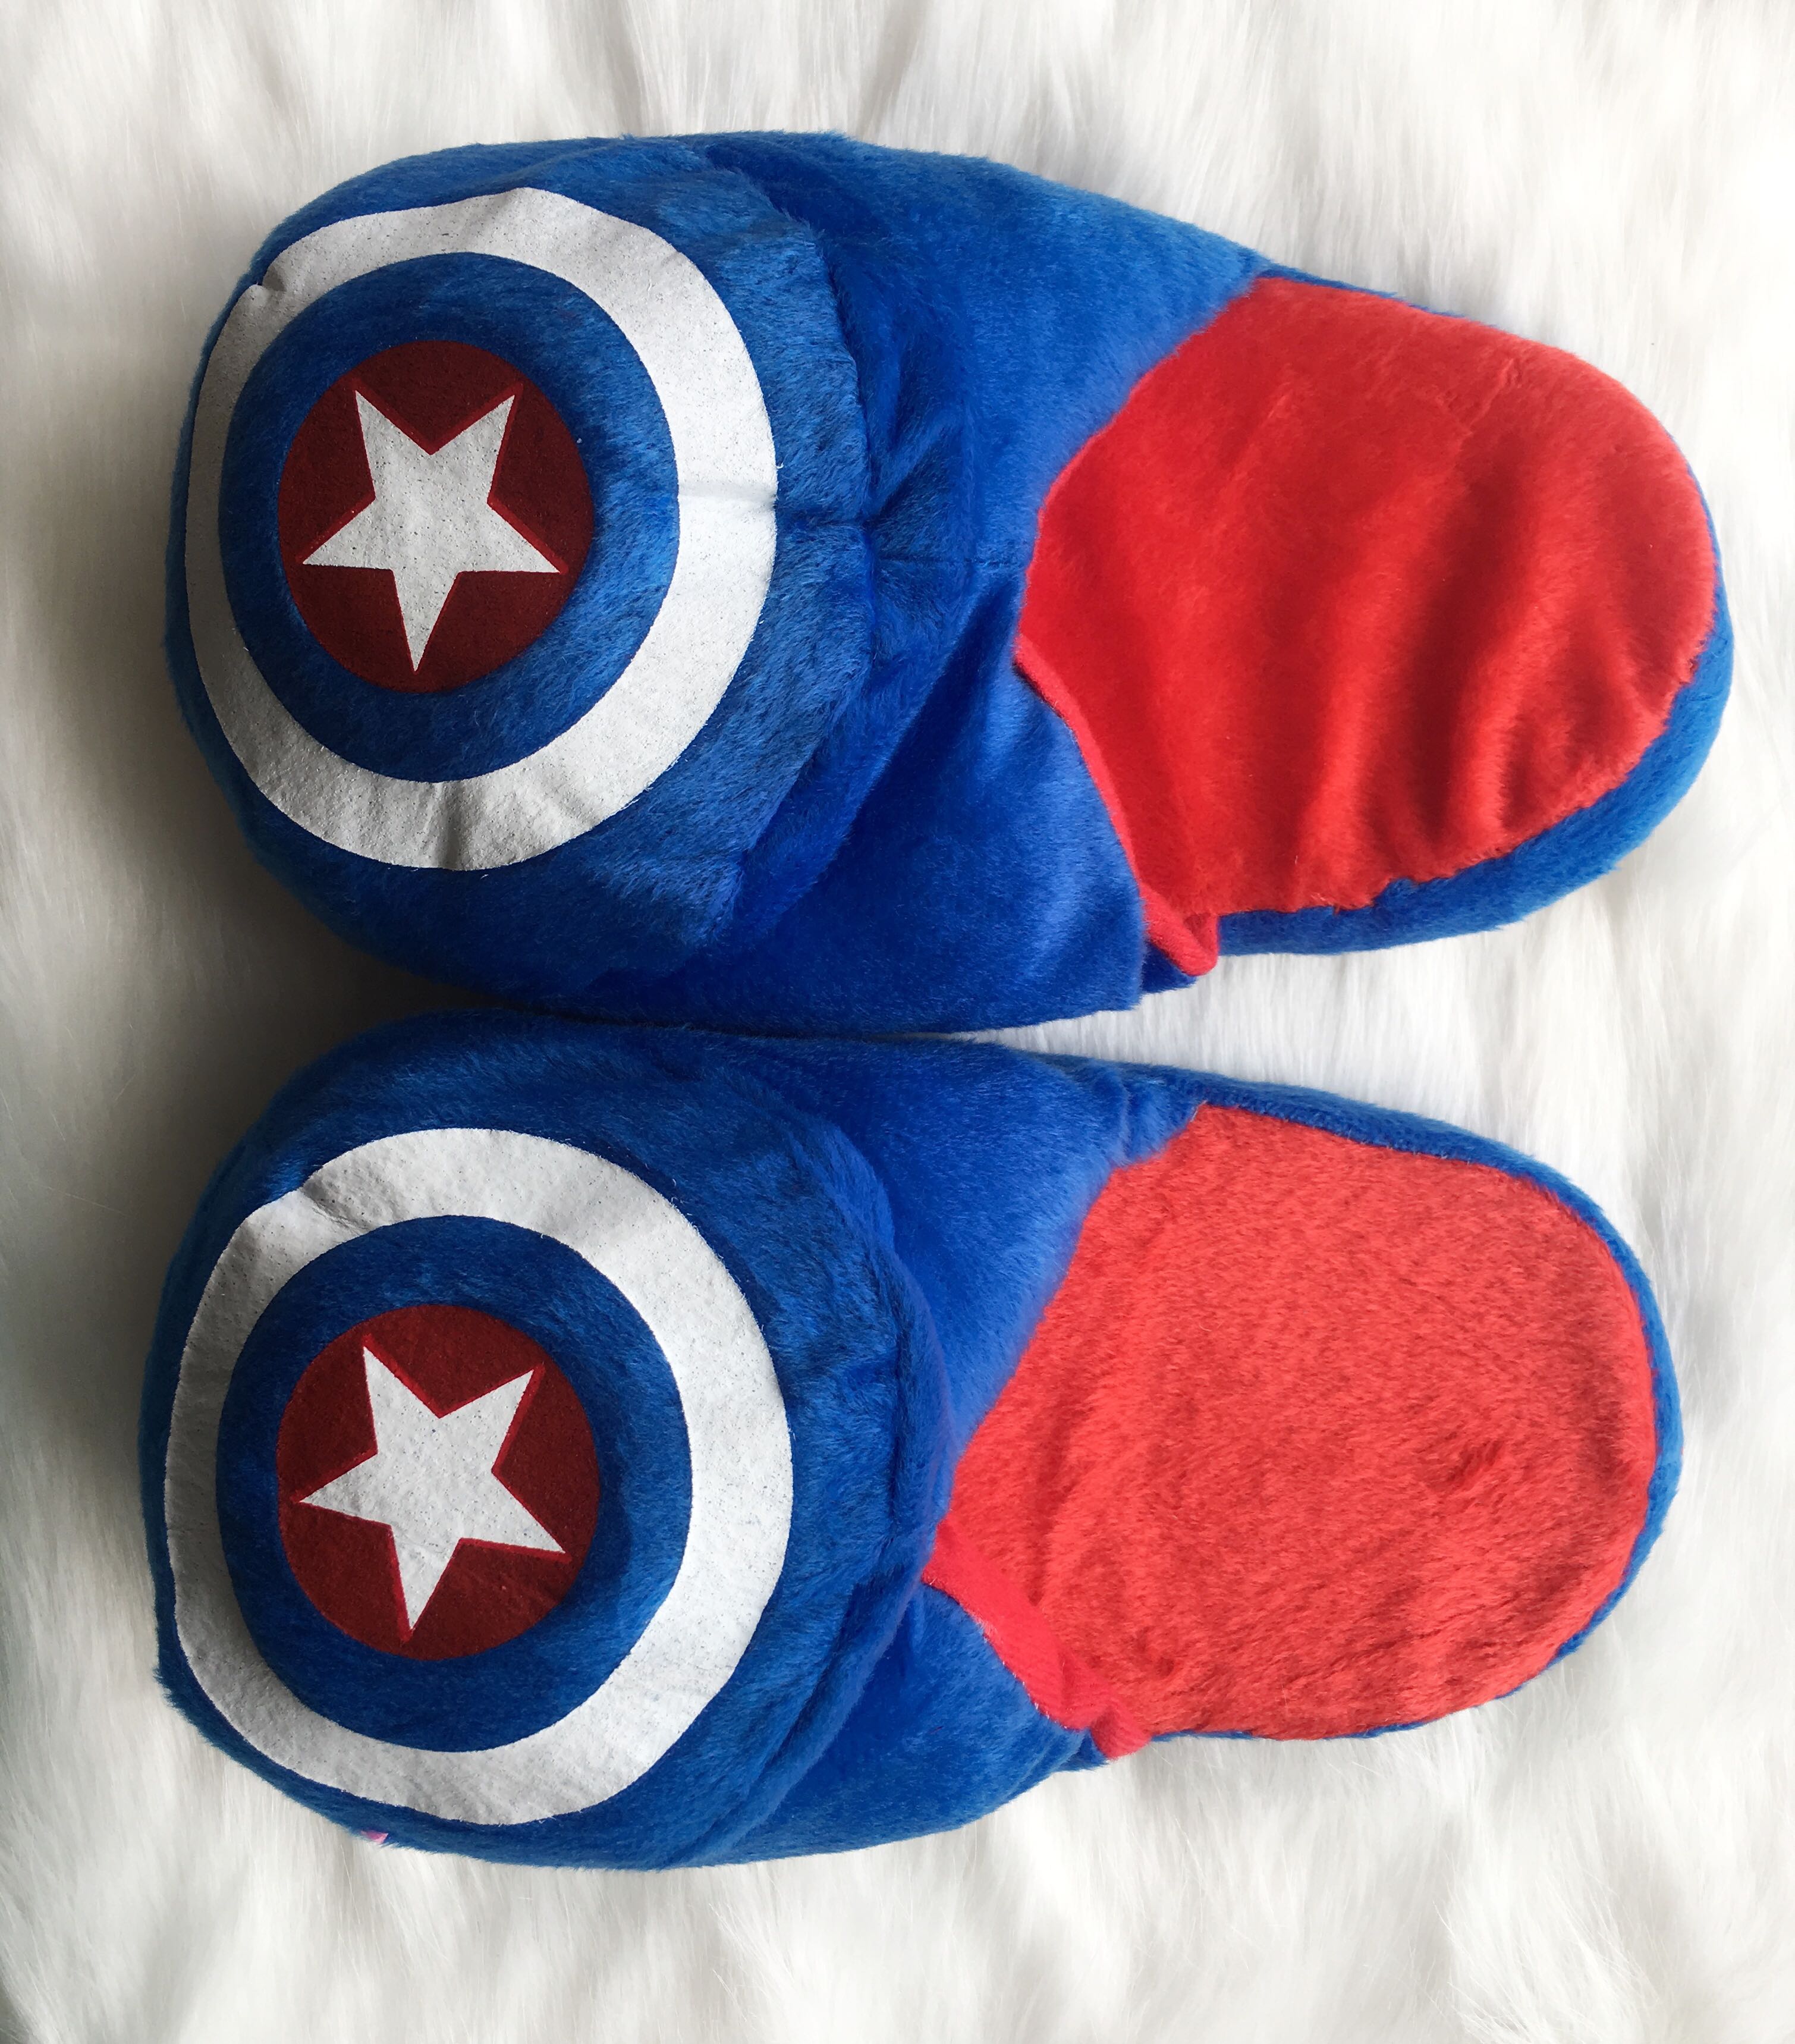 captain america slippers